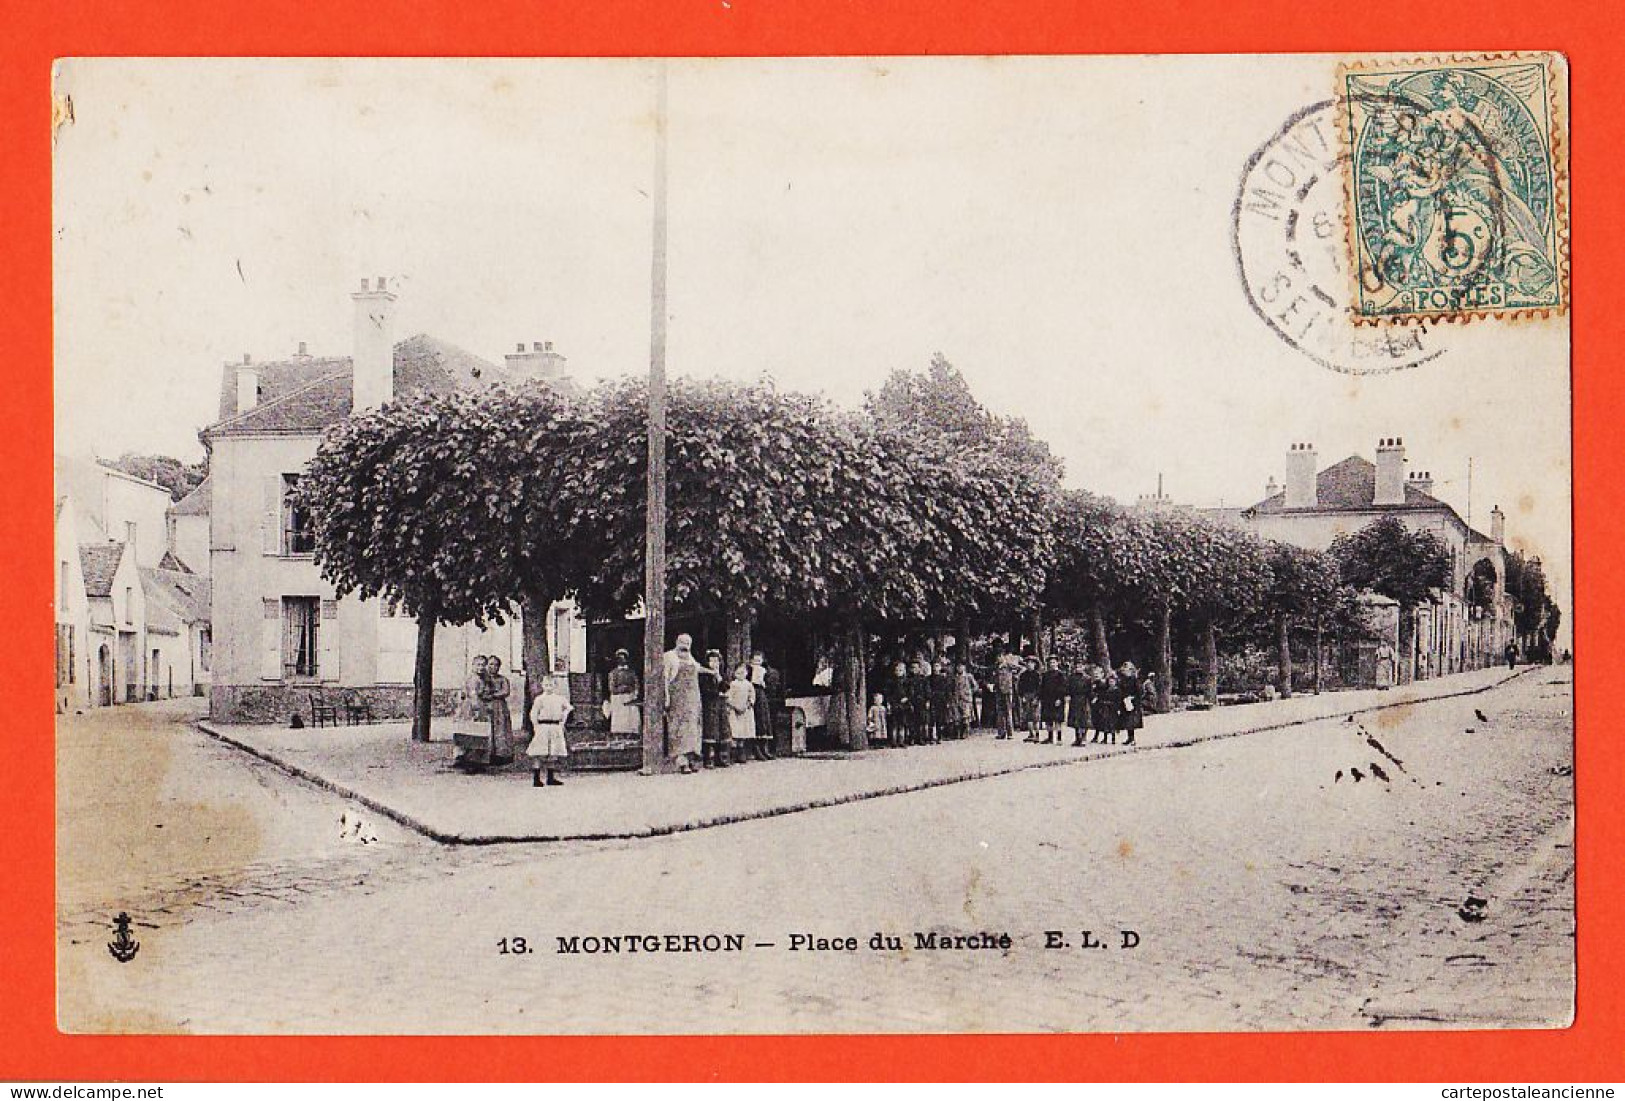 35448 / MONTGERON 91-Essonne Place MARCHE Animation Villageoise 1907 à CHANUSOT Av. Orléans Paris E.L.D LE DELEY 13 - Montgeron